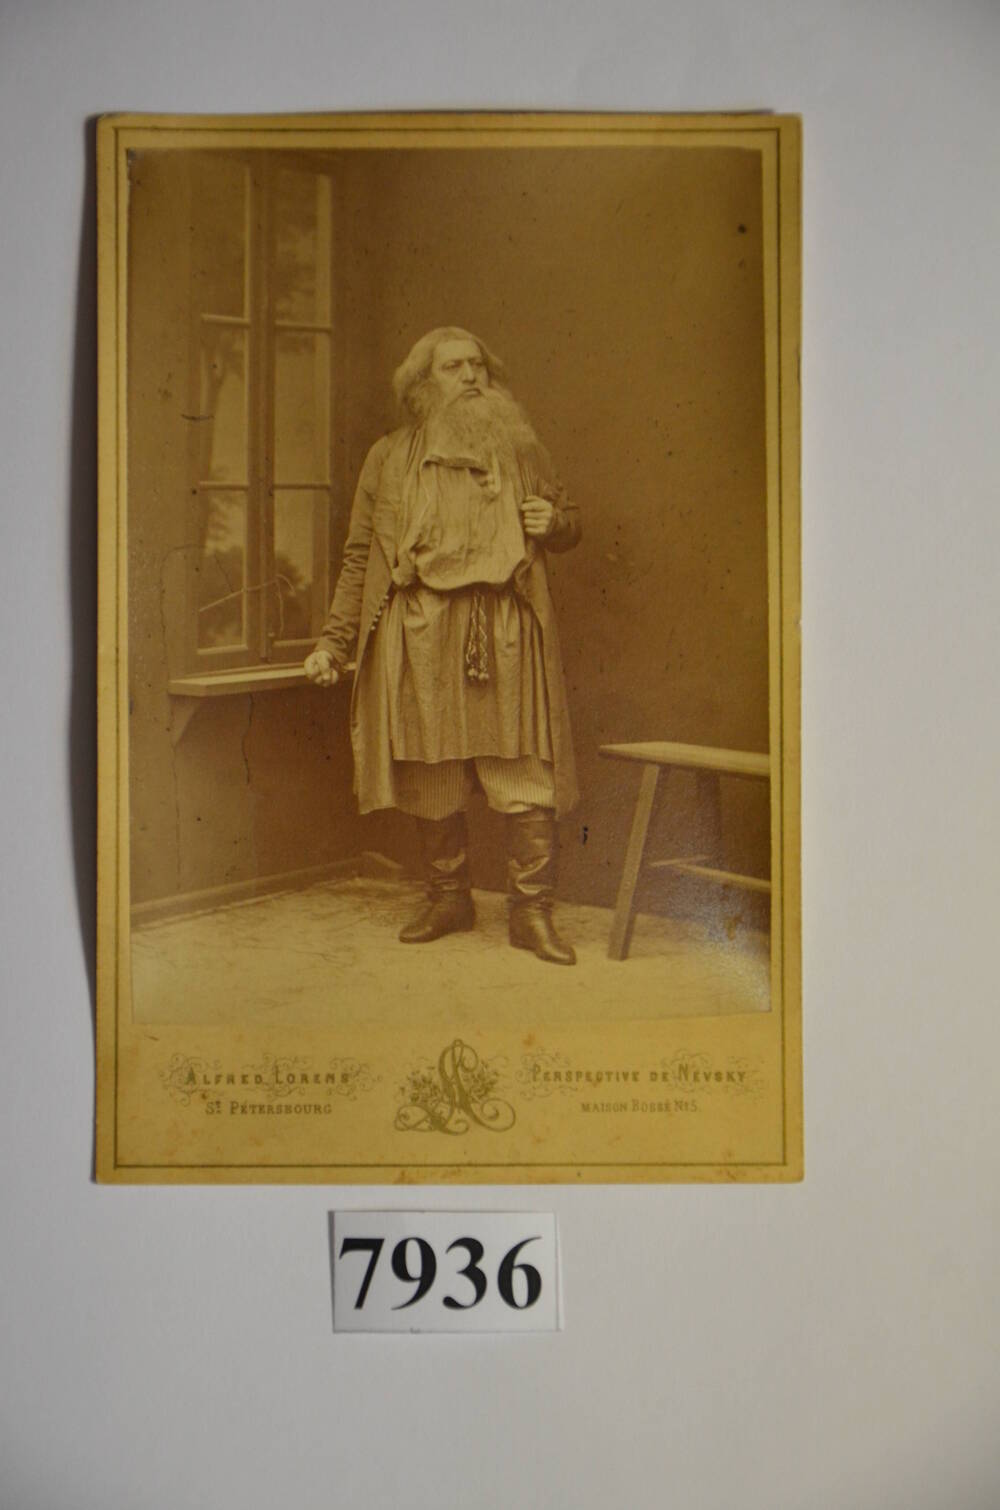 Фотография. Петров О.А. (1807 – 1878), русский оперный певец. На фирменном паспарту.